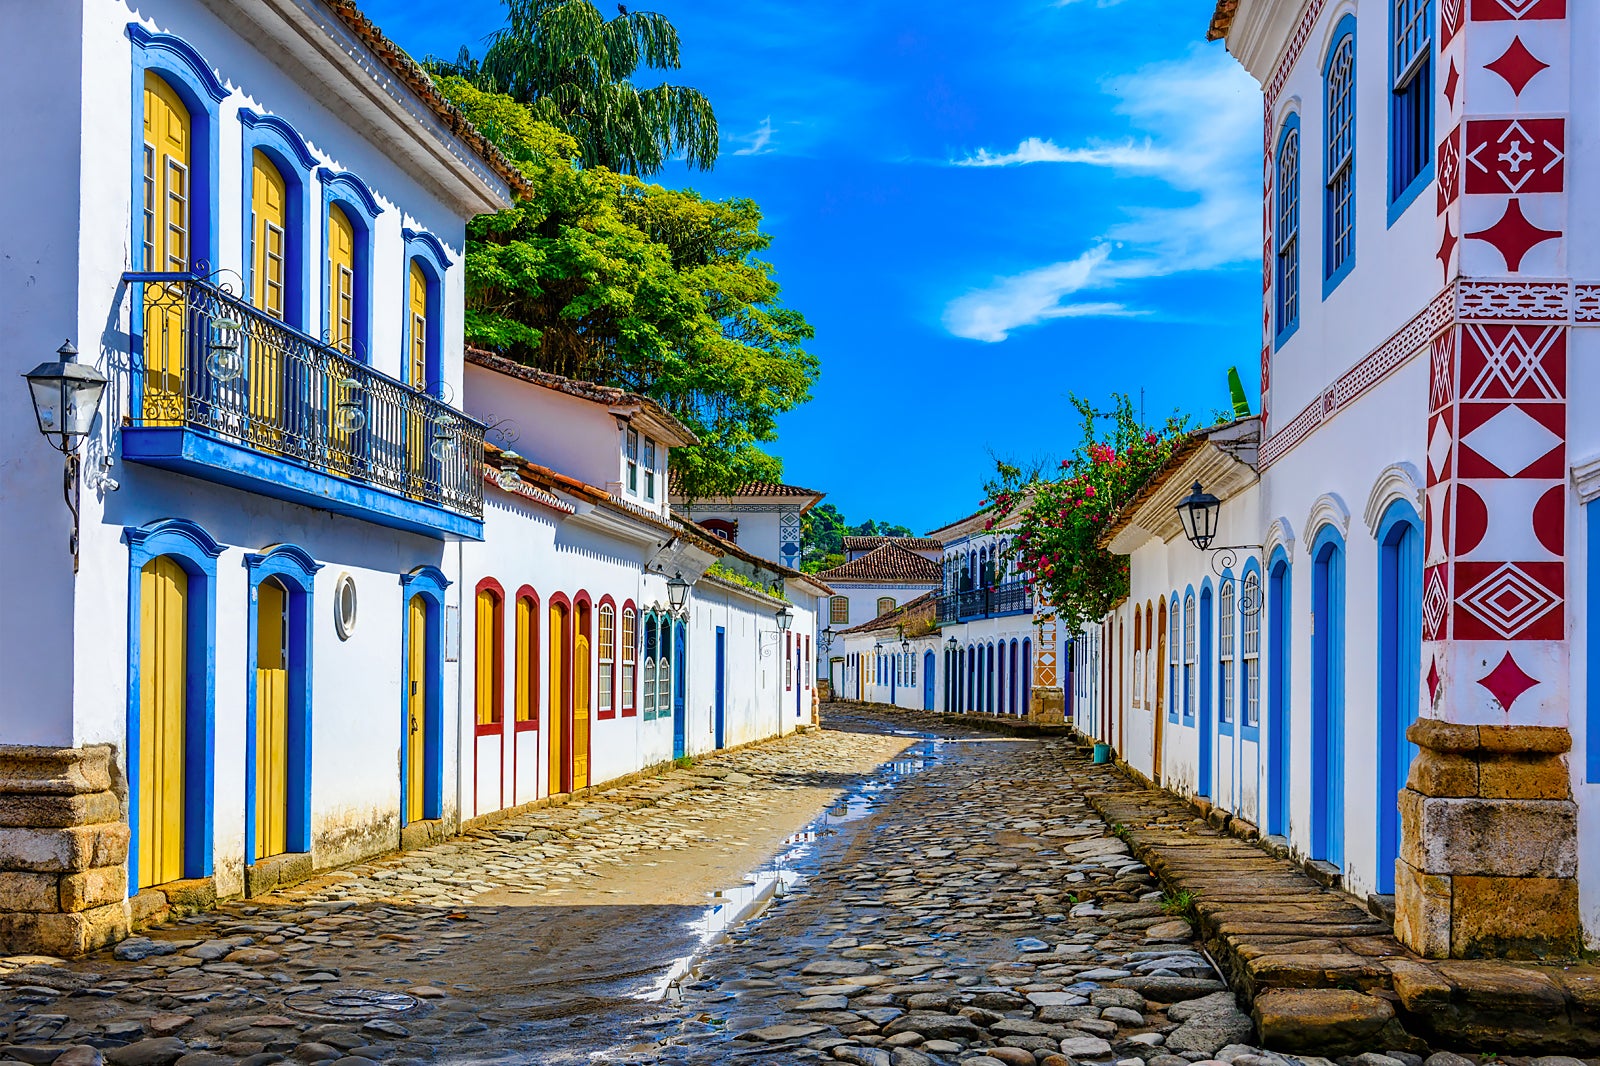 Viagens baratas no Brasil: viaje com o melhor custo benefício